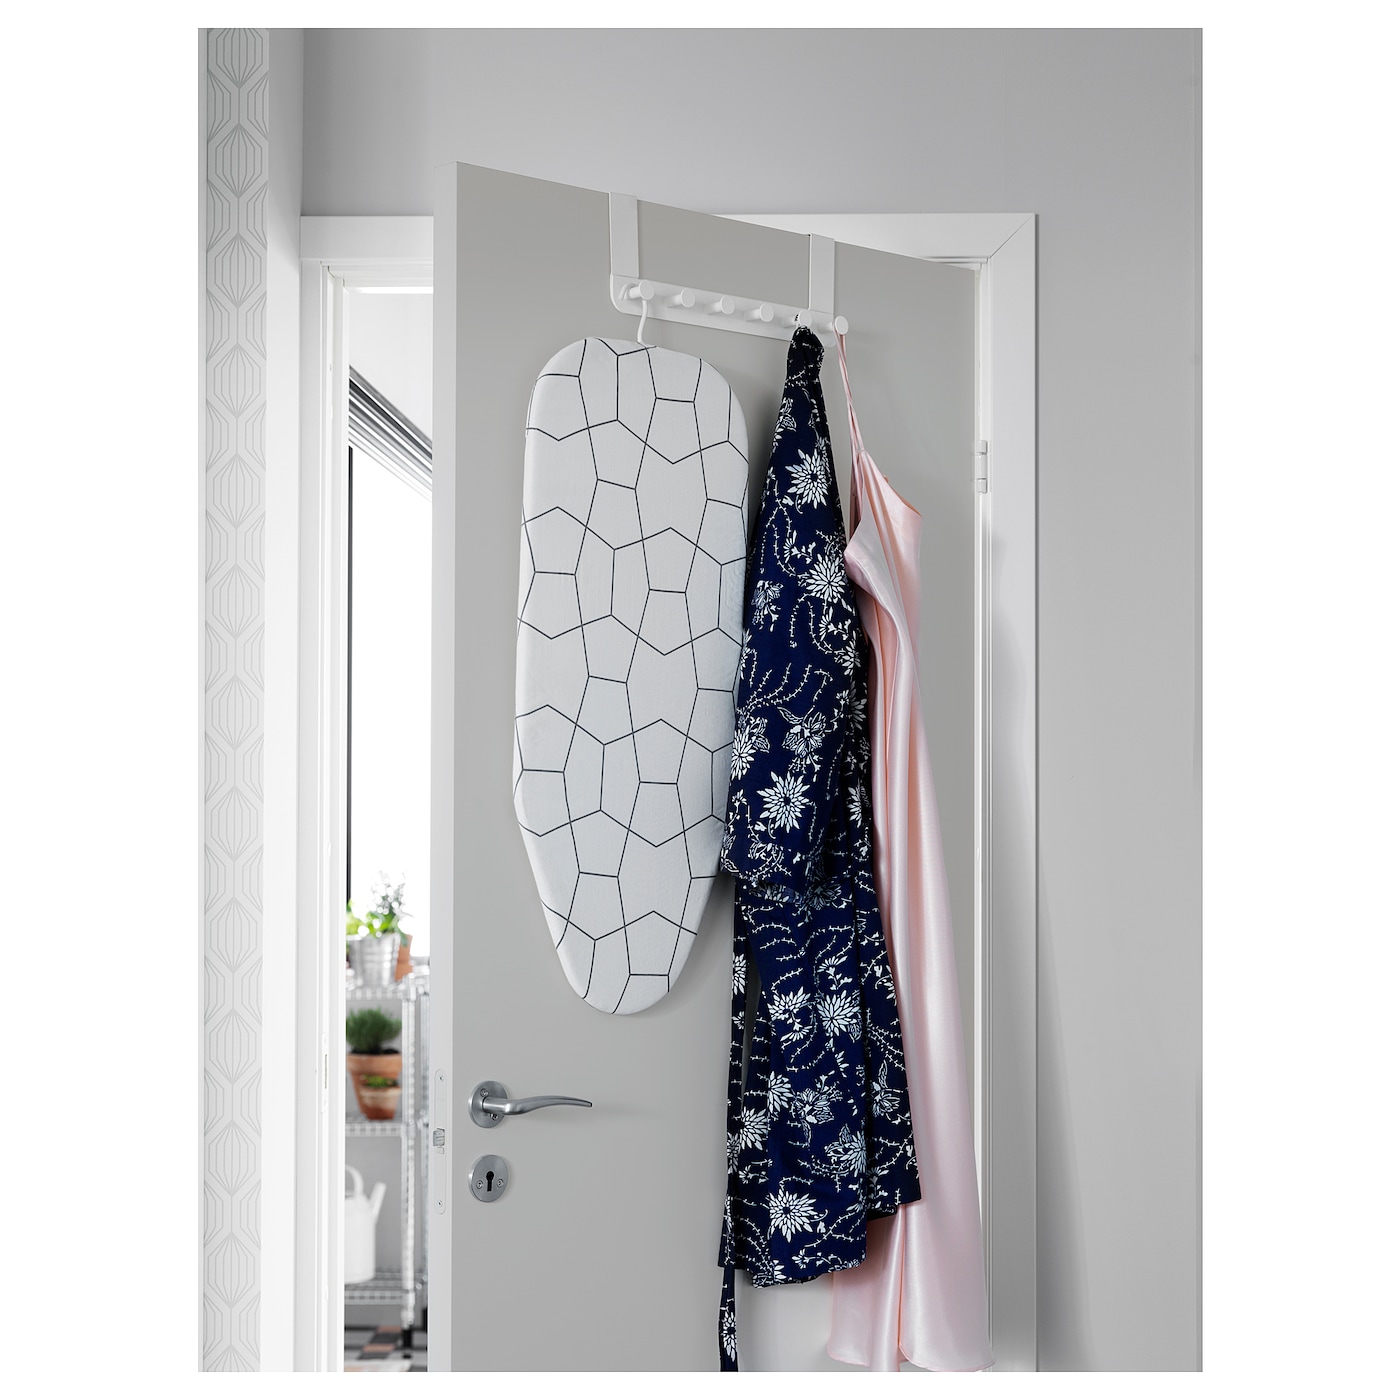 ENUDDEN hanger for door white - IKEA